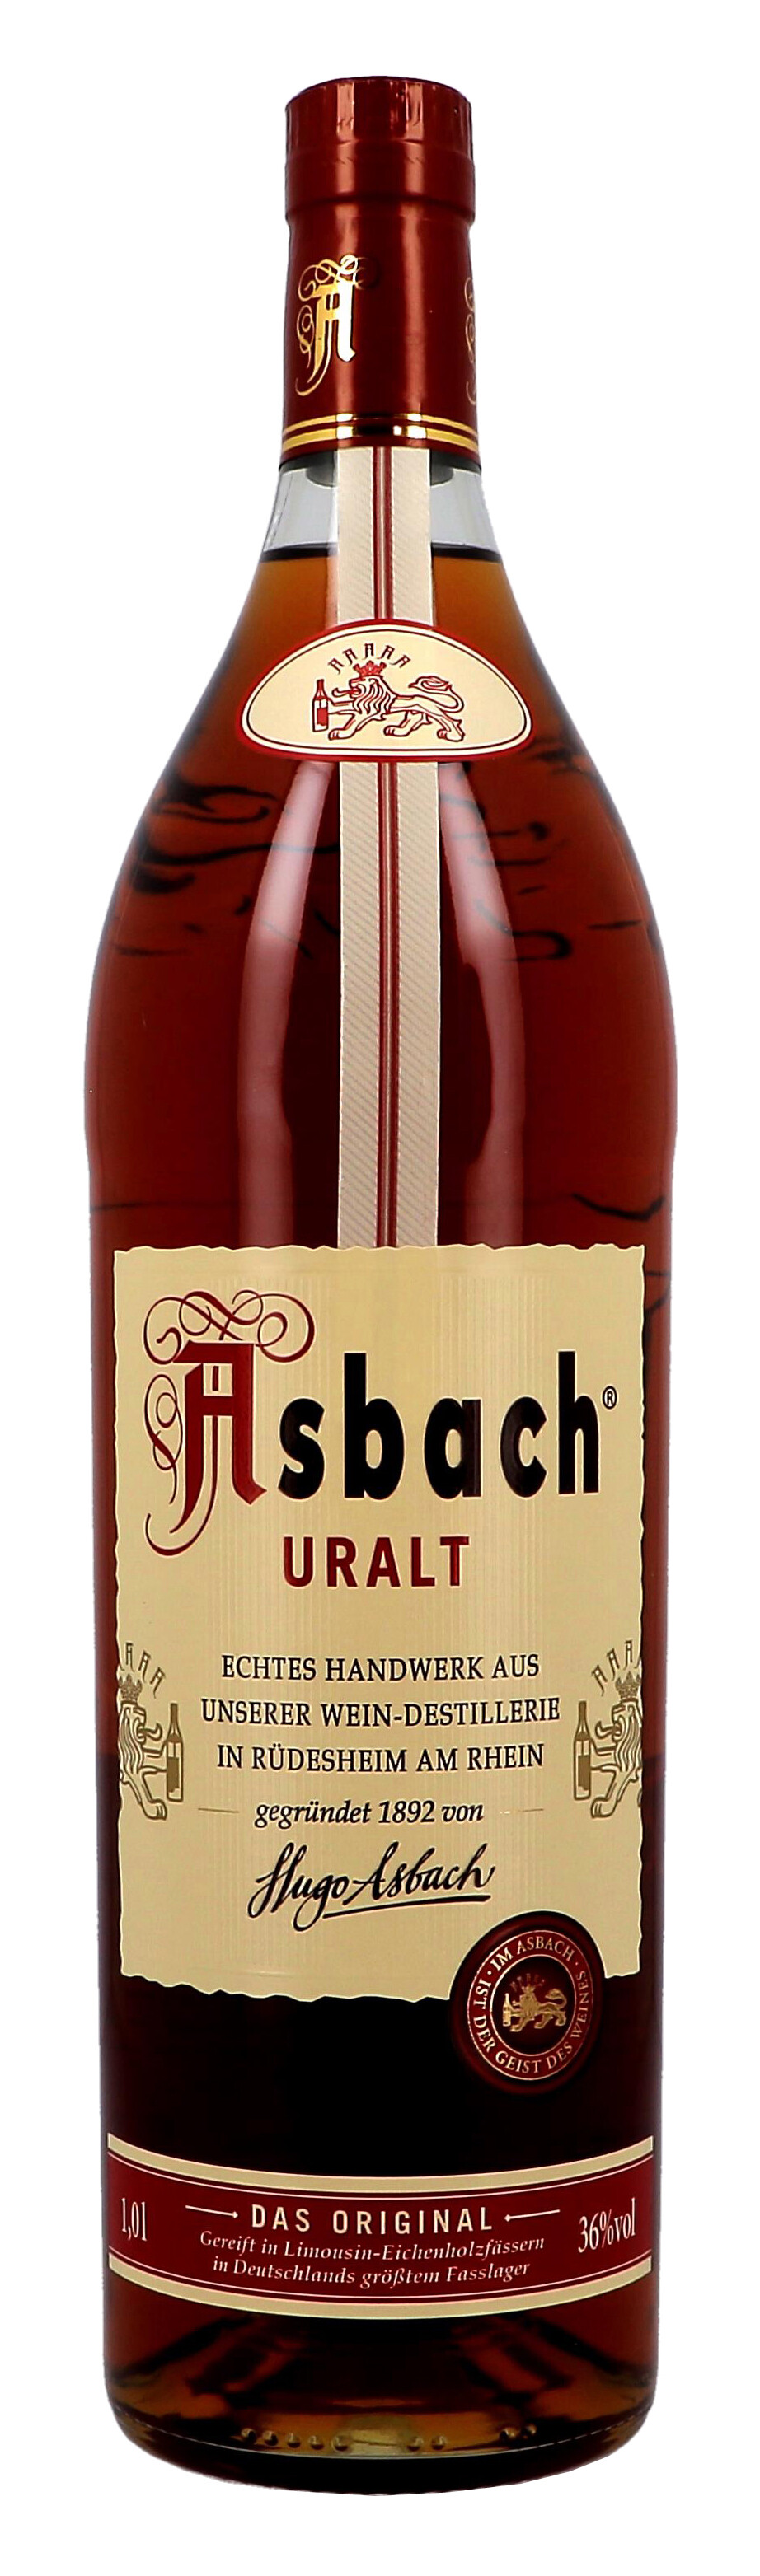 Asbach Uralt 1L 36% Weinbrand - Duitsland